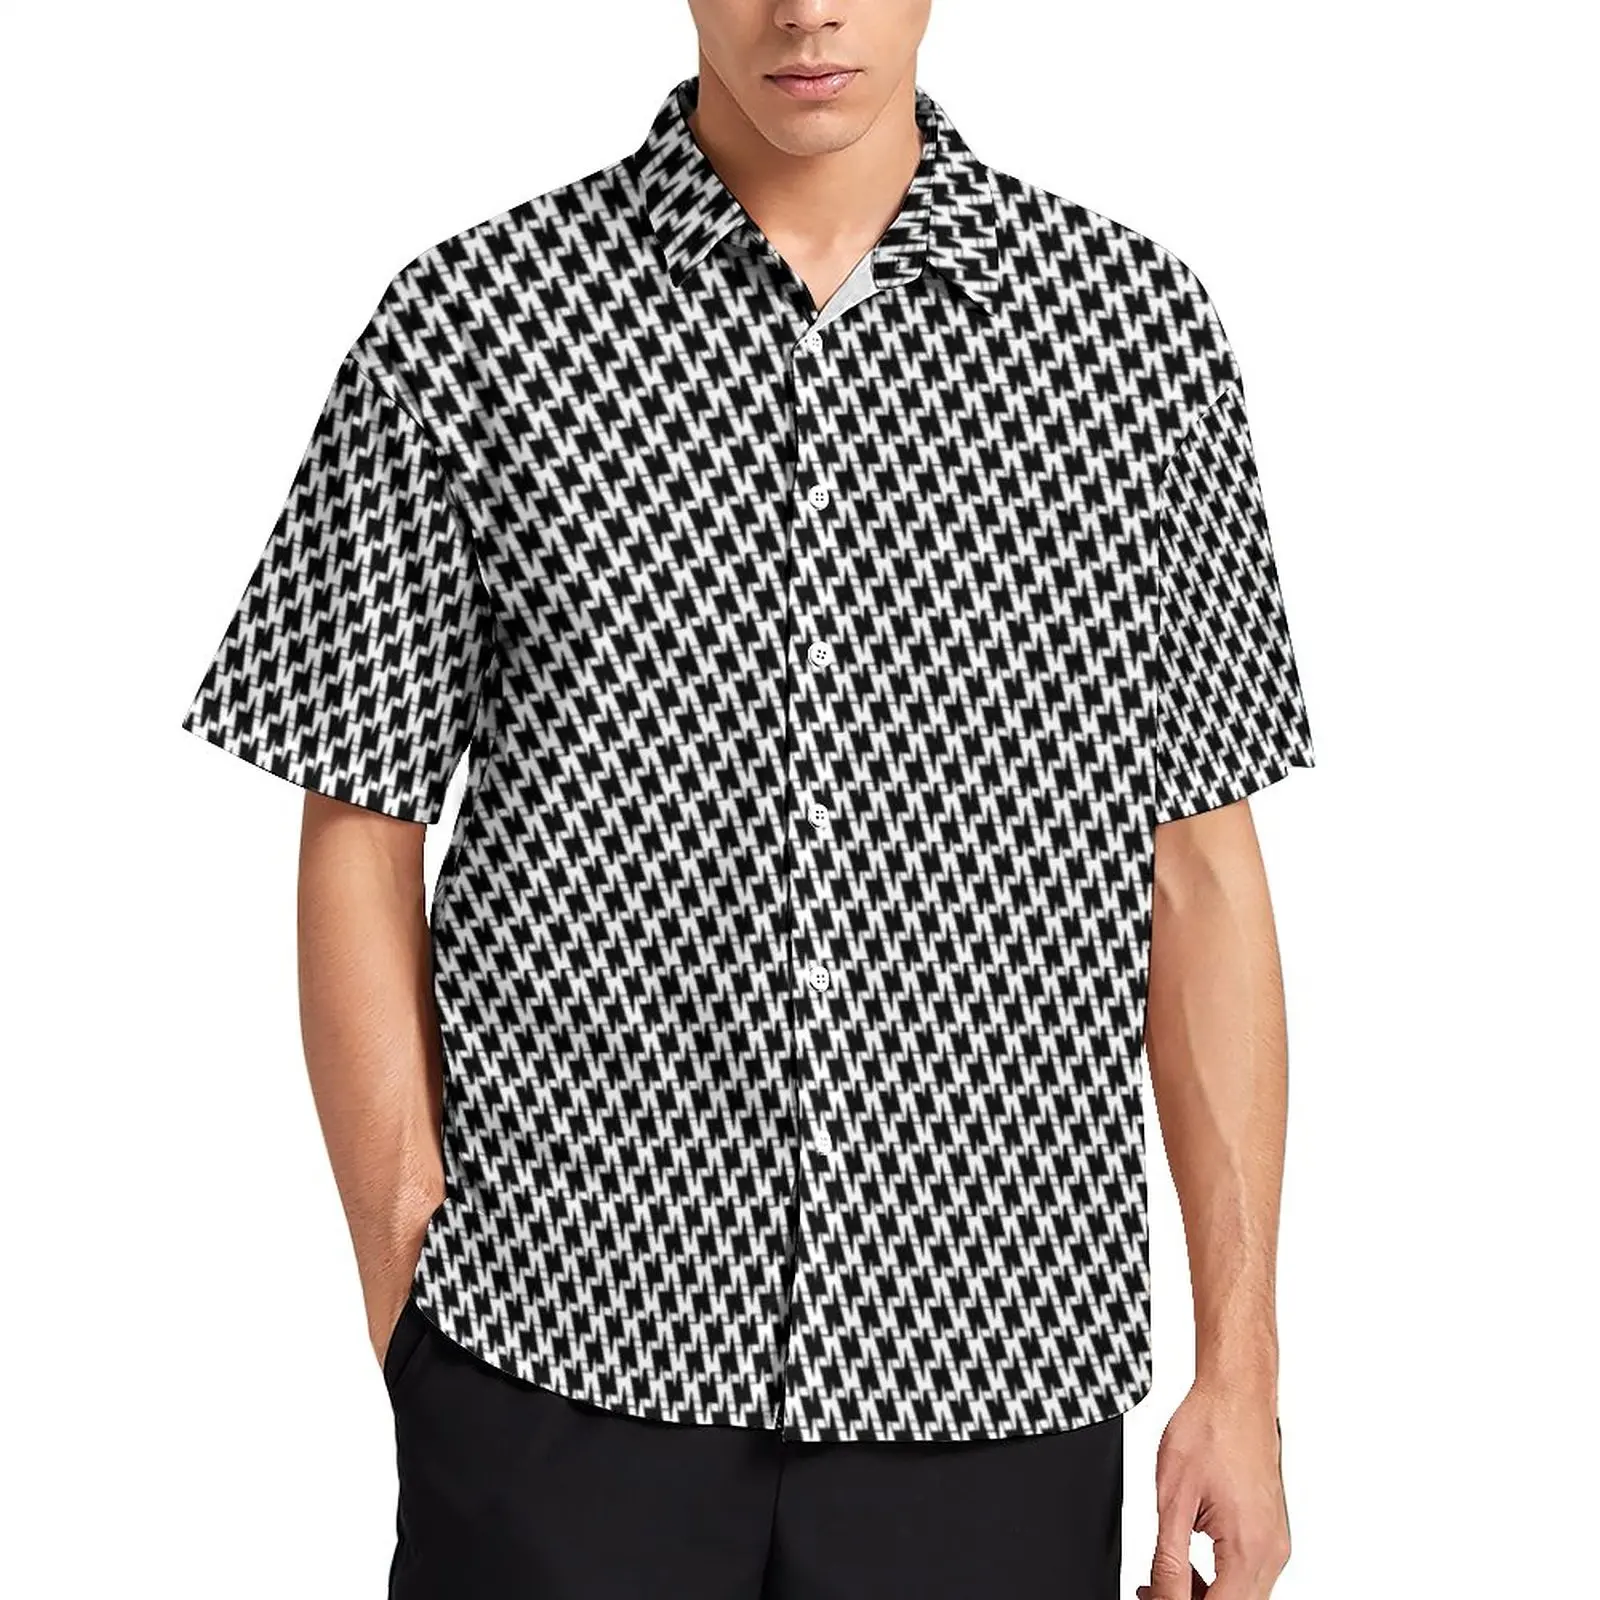 

Повседневная рубашка с рисунком «гусиные лапки», черная пляжная Свободная рубашка с принтом «болты», гавайская уличная блузка с короткими ...